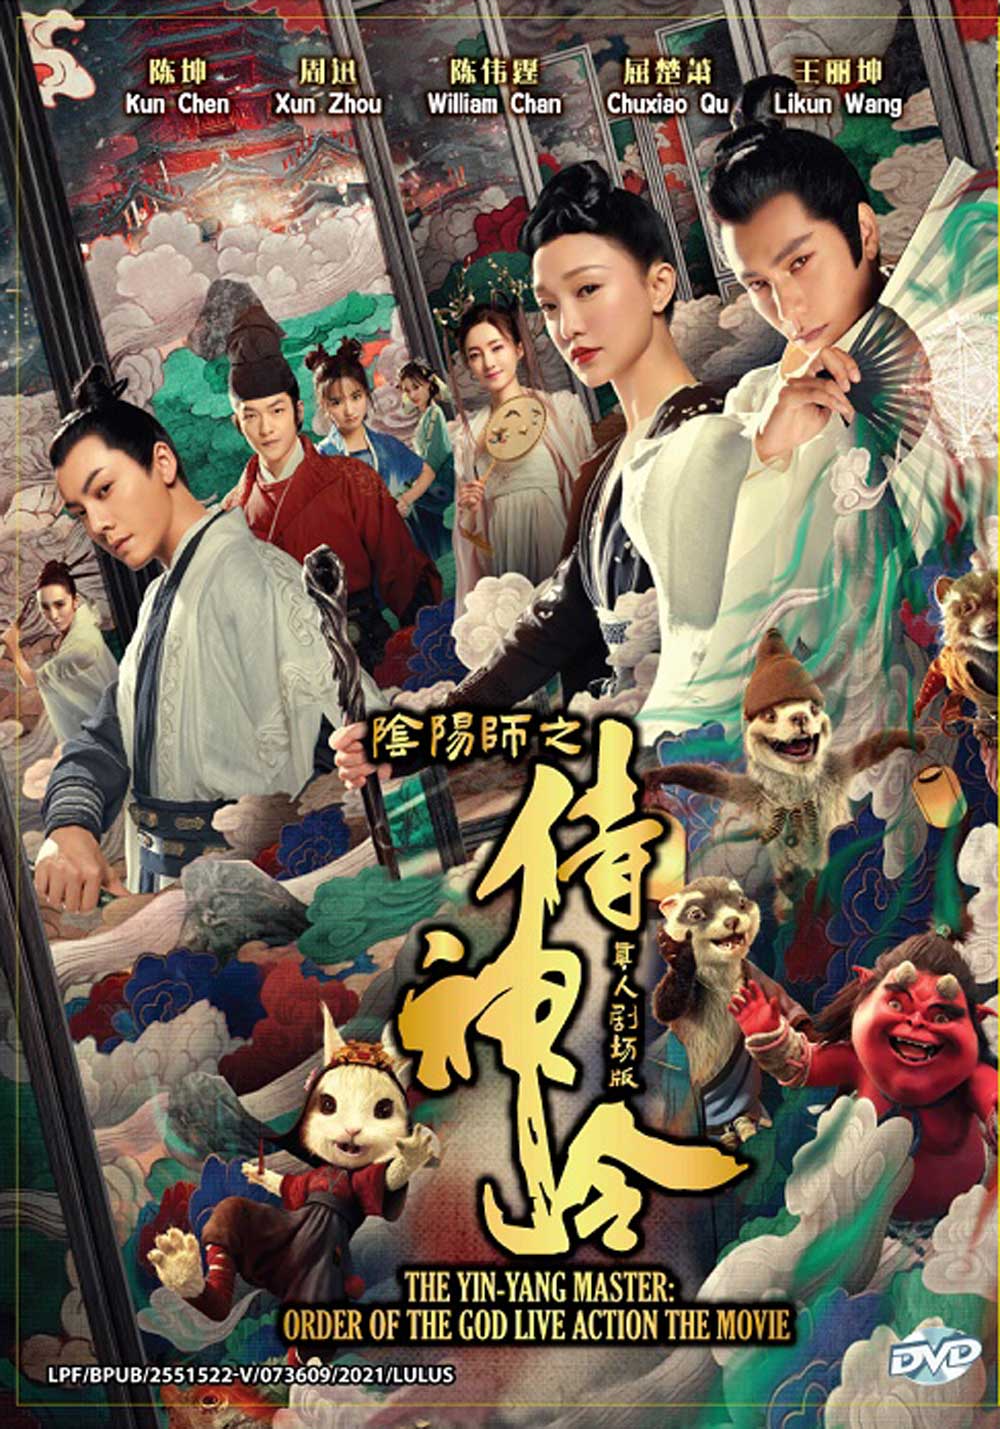 阴阳师之侍神令真人剧场版(DVD) (2021)大陆电影中文字幕